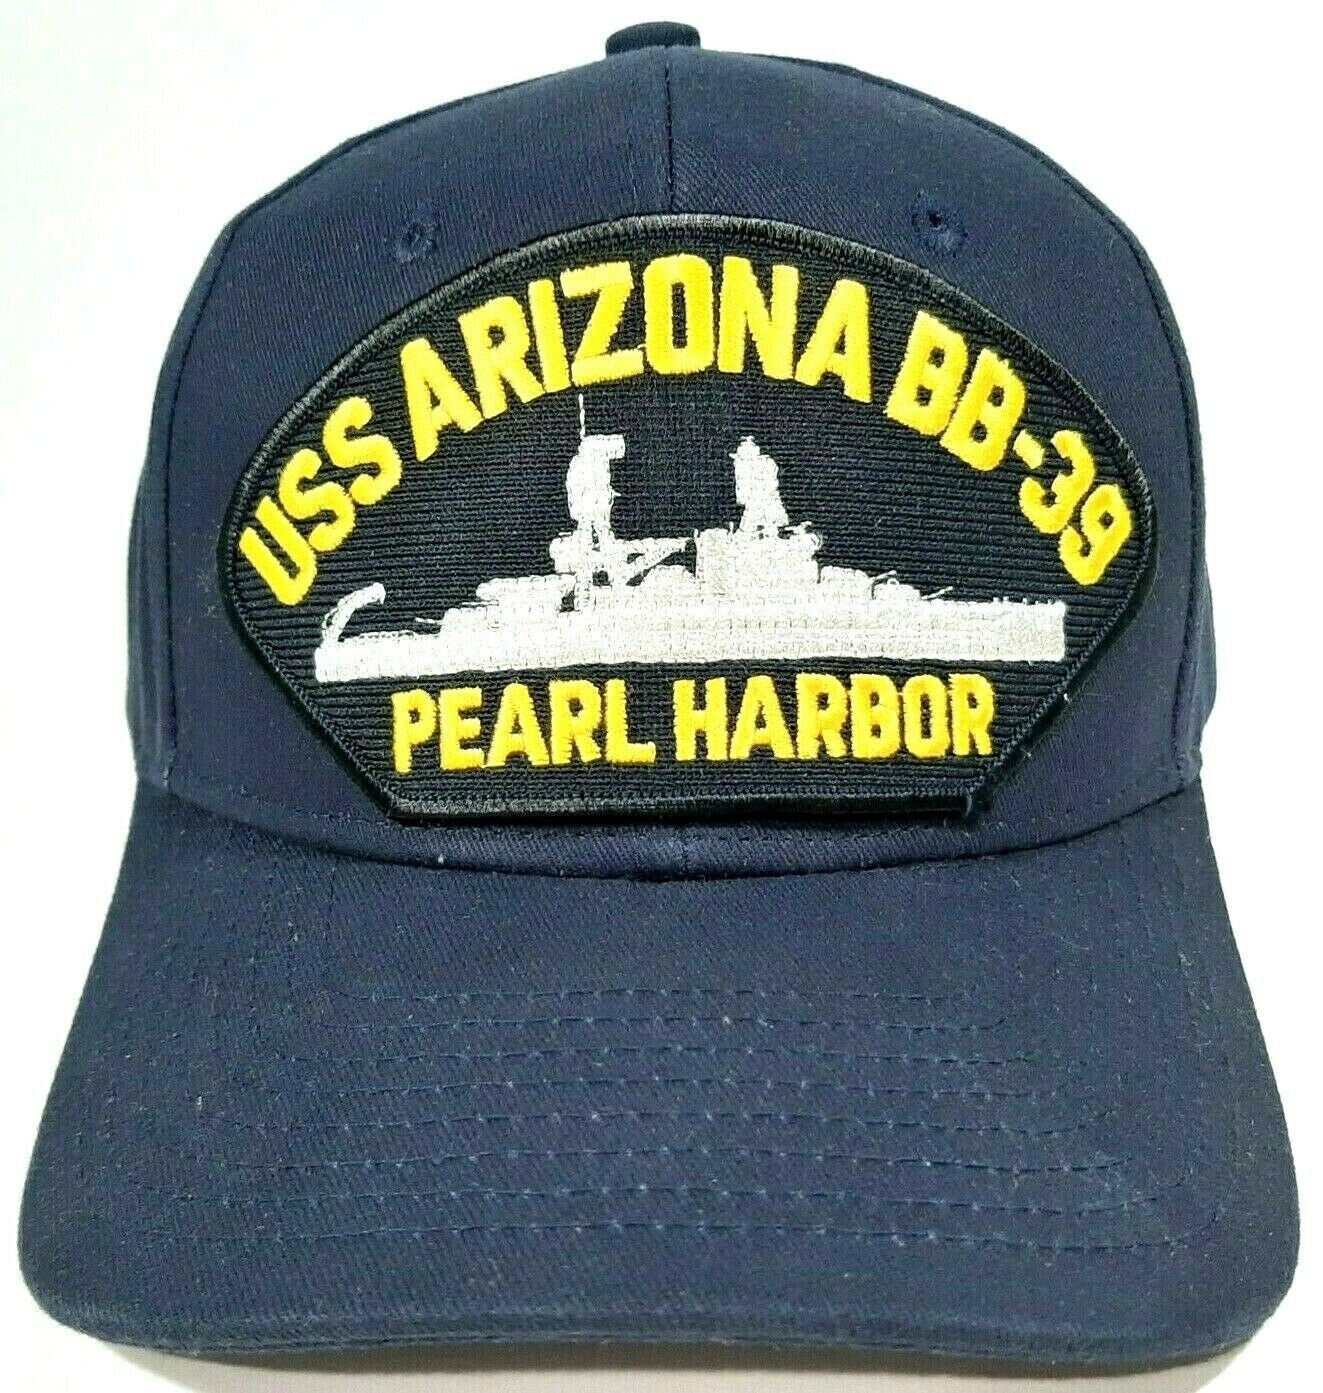 U.S. Navy USS Arizona BB-39 Pearl Harbor Men's Cap Hat Navy Blue